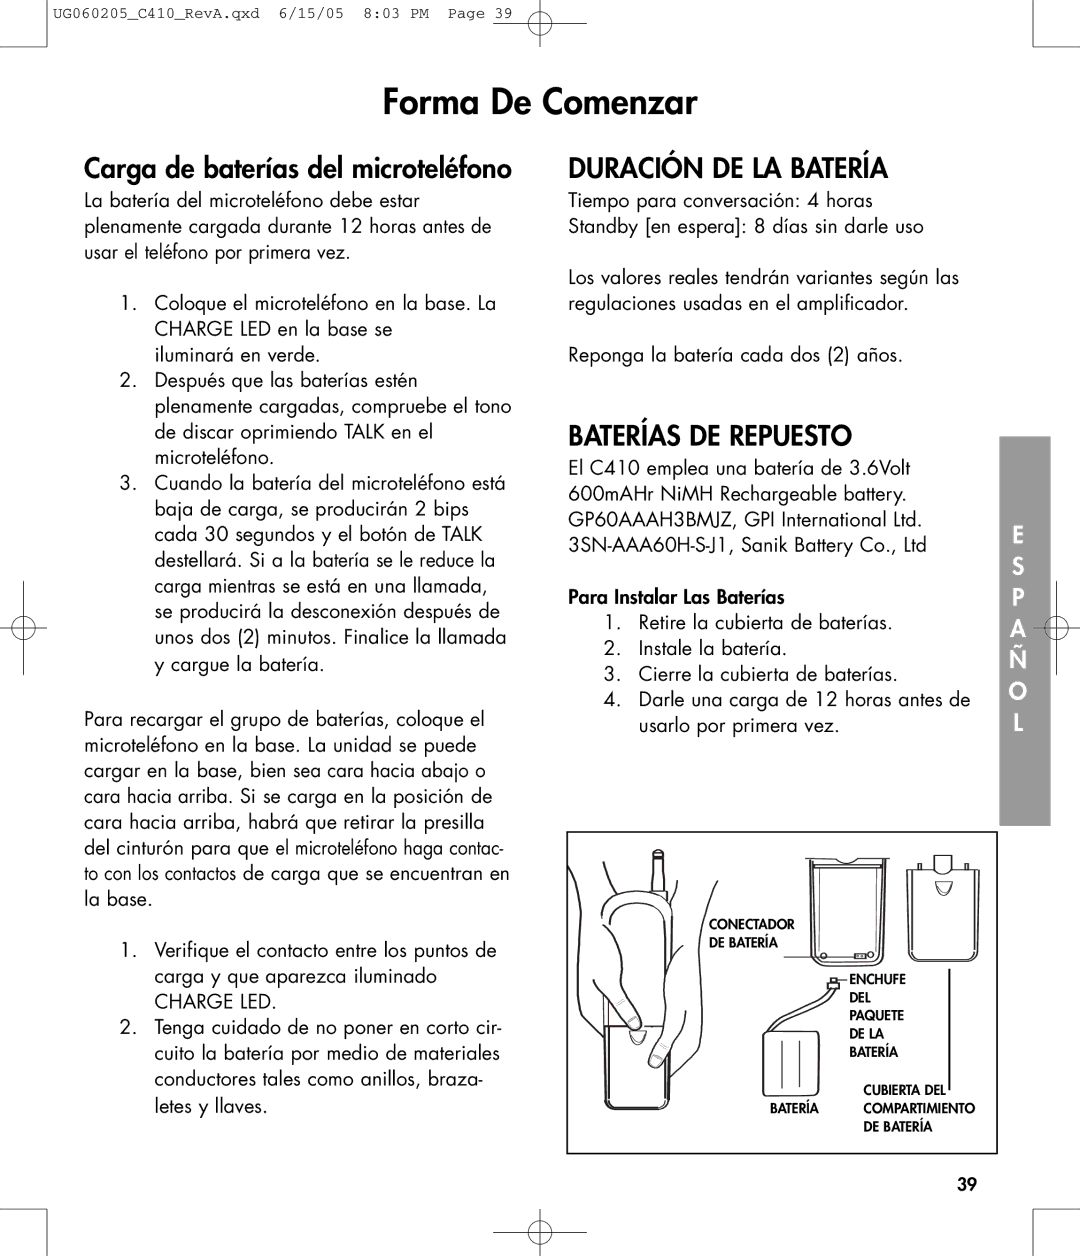 Clarity C410 owner manual Duración DE LA Batería, Baterías DE Repuesto 